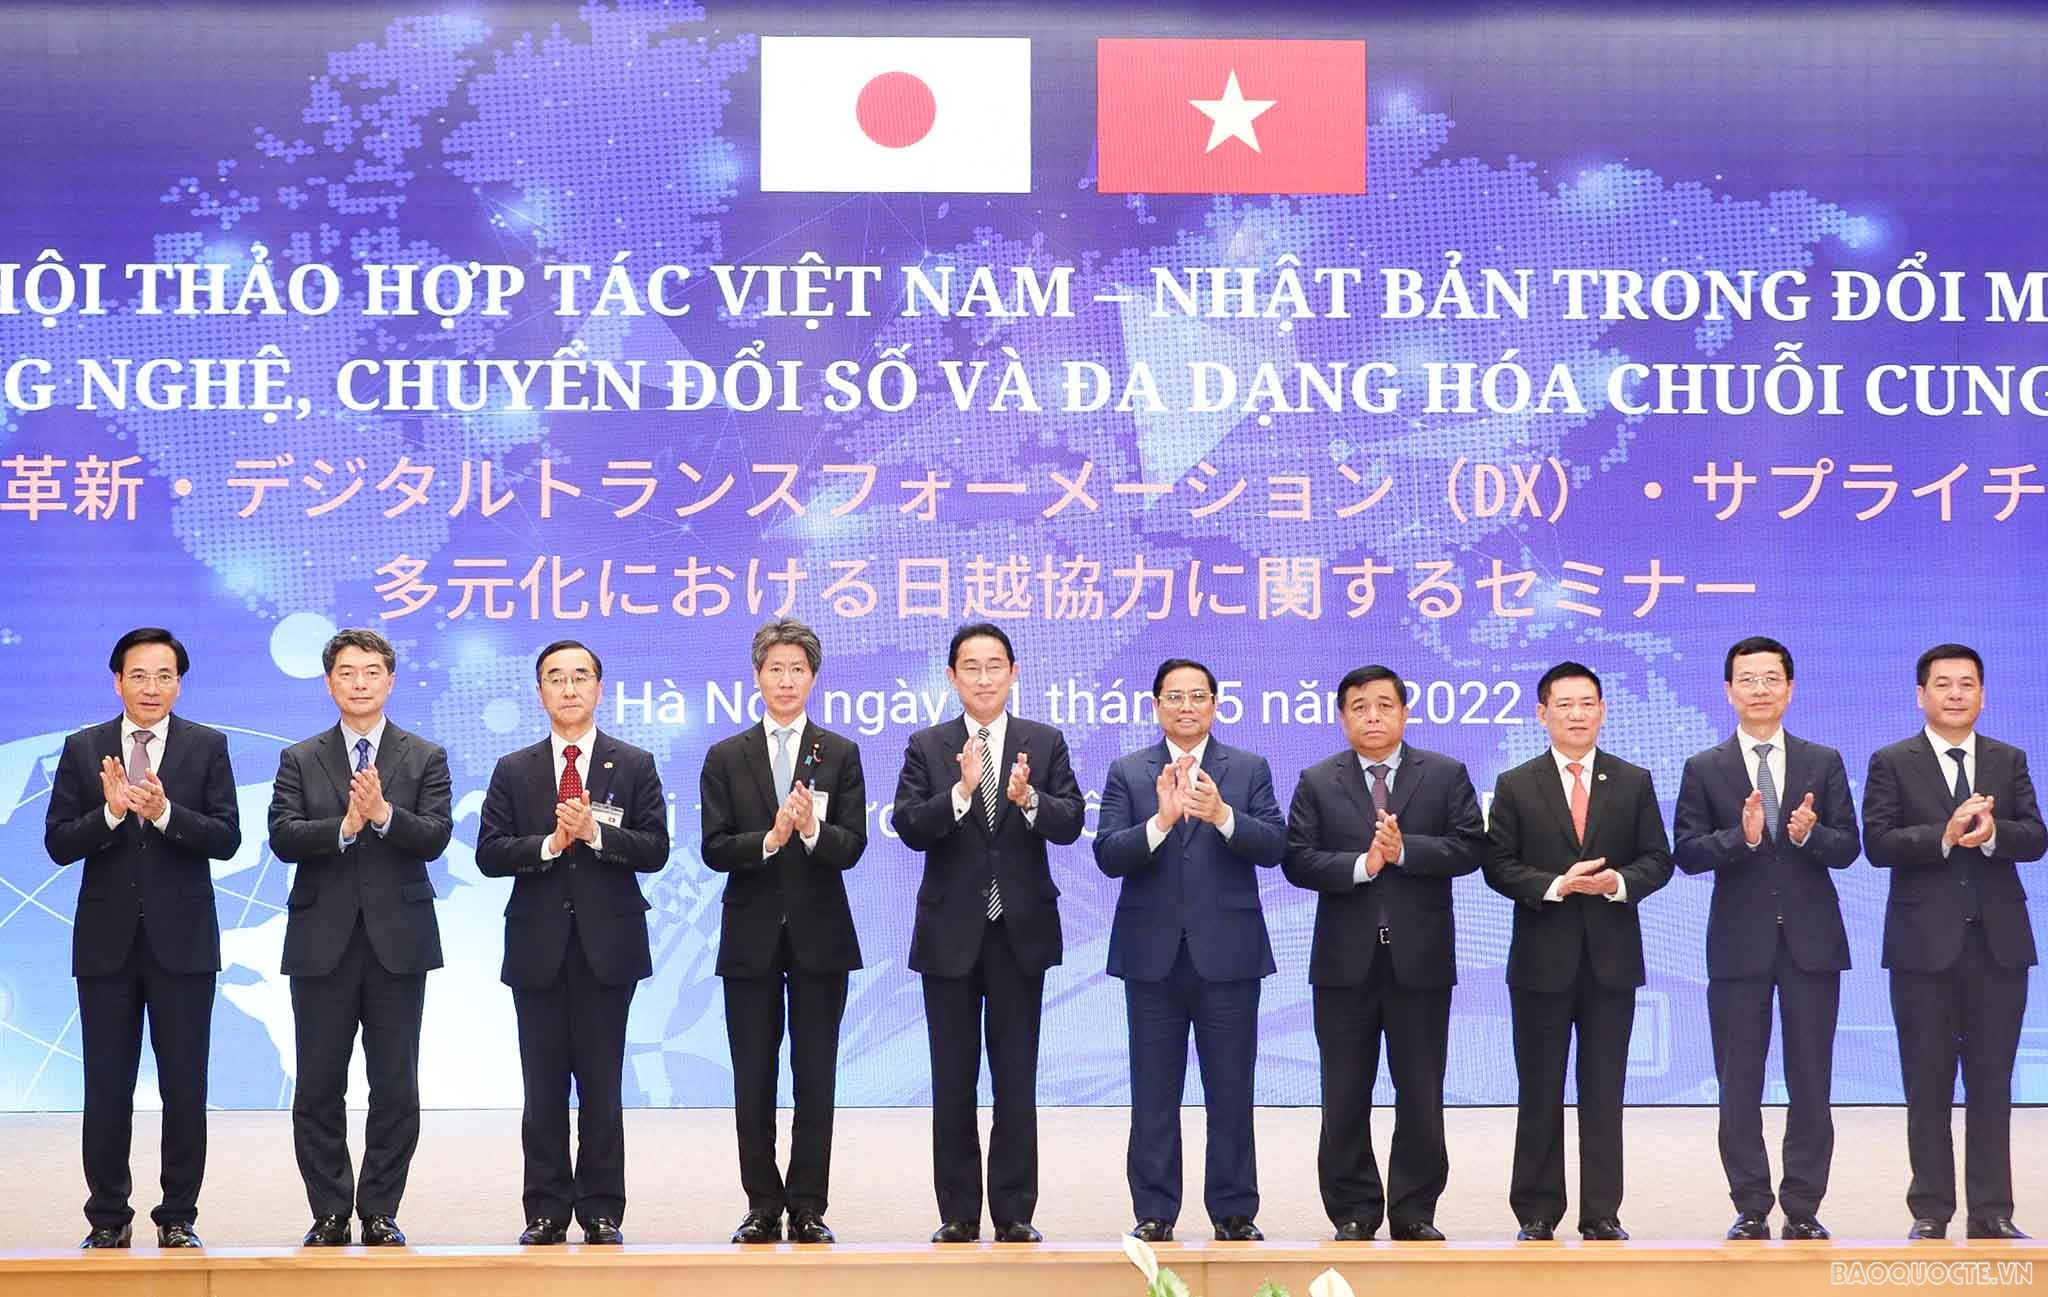 Hội thảo hợp tác Việt Nam - Nhật Bản trong đổi mới công nghệ, chuyển đổi số và đa dạng hóa chuỗi cung ứng.